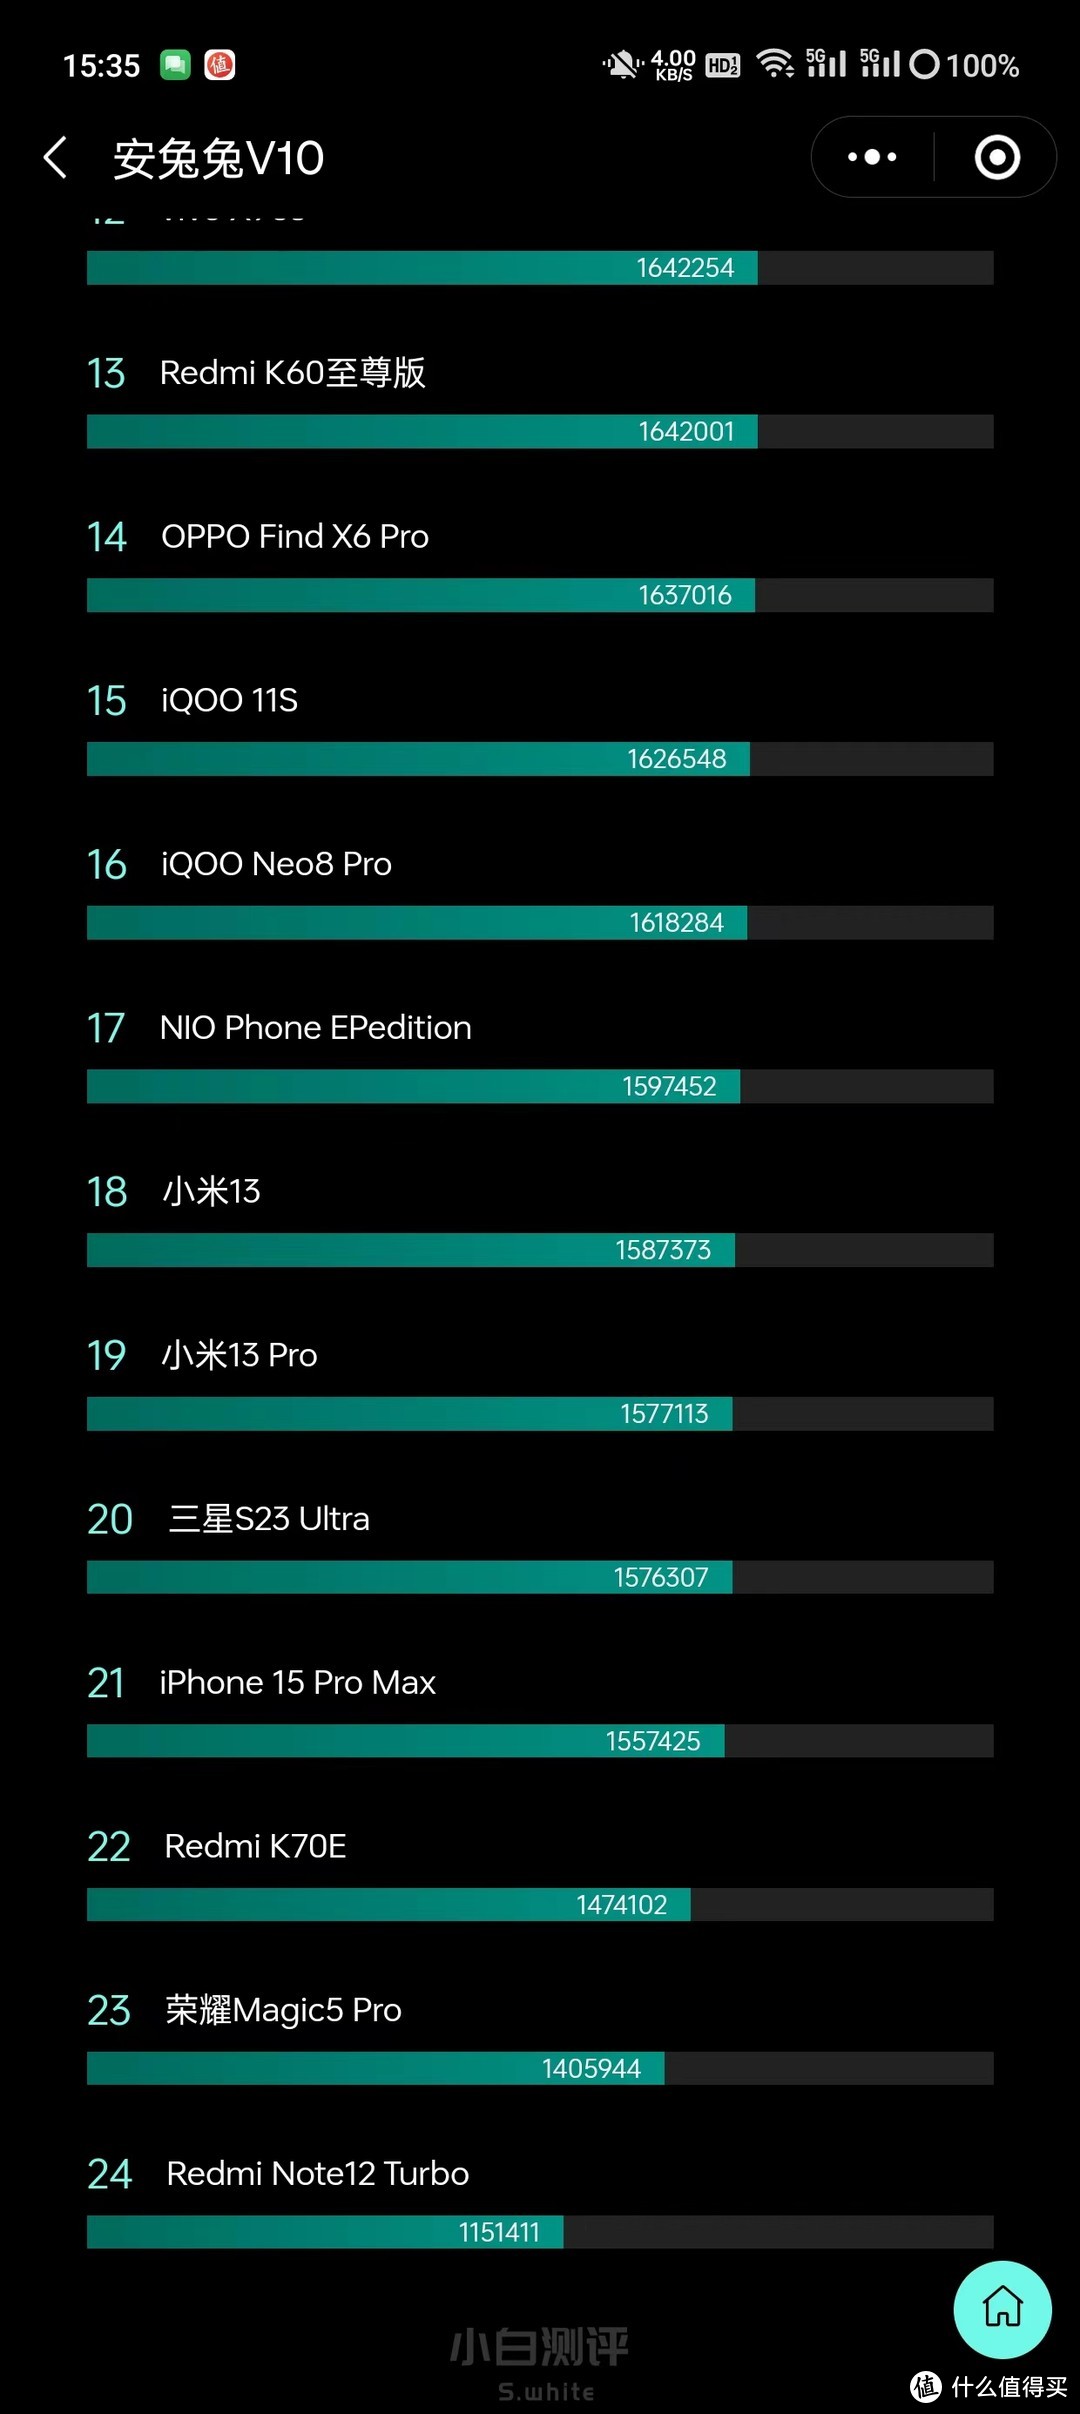 最新安兔兔V10排名，红米K70E排名22位，iPhone15也是前一位而已